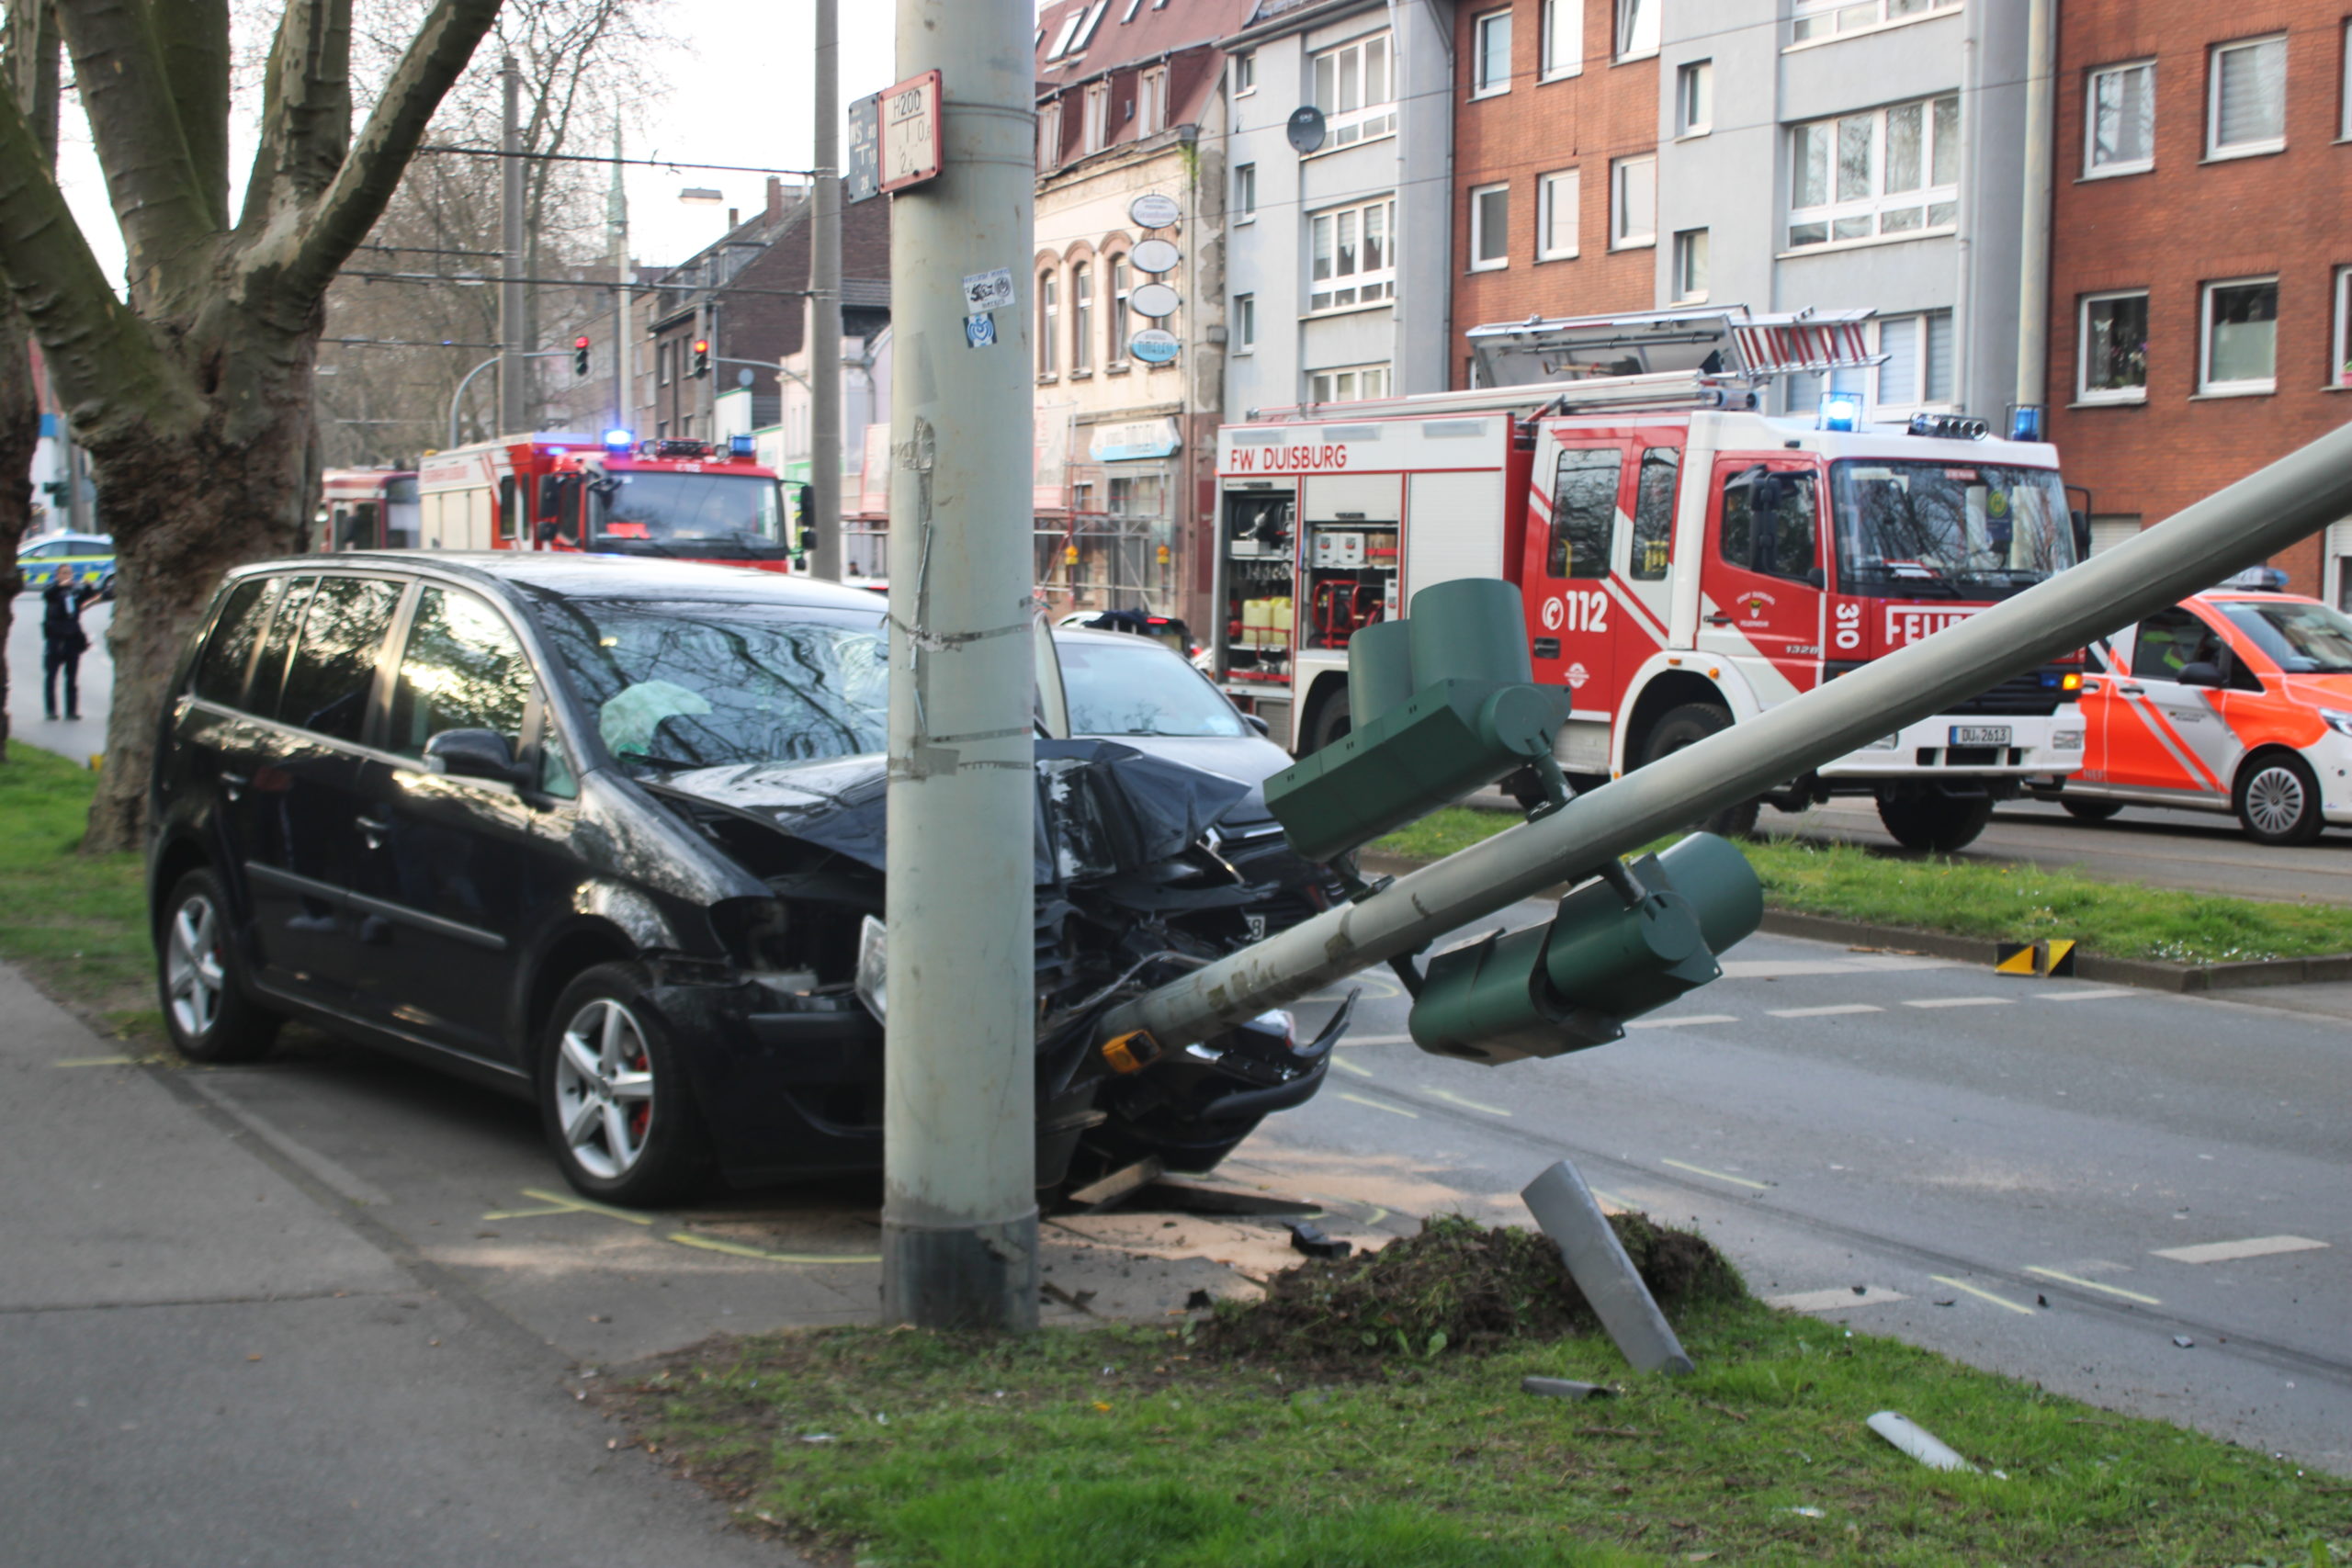 Auf der Duisburger Straße ist es am frühen Mittwochabend (30. 17:50 Uhr) zu einem Unfall gekommen; mehrere Personen wurden dabei verletzt: Ein 22-jähriger Dacia-Fahrer wollte offenbar einen Renault (Fahrer: 22 Jahre) über die angrenzenden Straßenbahnschienen überholen. Als er auf eine Verkehrsinsel zusteuerte, lenkte er nach rechts und prallte mit dem Renault zusammen. Der Dacia kam daraufhin ins Schleudern und stieß gegen einen VW (Fahrerin: 28 Jahre), der auf der rechten Fahrspur unterwegs war. Die Fahrerin prallte mit ihrem Wagen gegen eine Ampel, die abknickte. Der Dacia schleuderte in eine Glaswand des Wartehäuschens der Bahnhaltestelle "Hamborner Feuerwache", die komplett zerbrach. Rettungswagen brachten den 22-jährigen Dacia-Fahrer und die VW-Fahrerin sowie ihr Kind (7) zur Behandlung in Krankenhäuser. Ihre Autos waren nicht mehr fahrbereit.